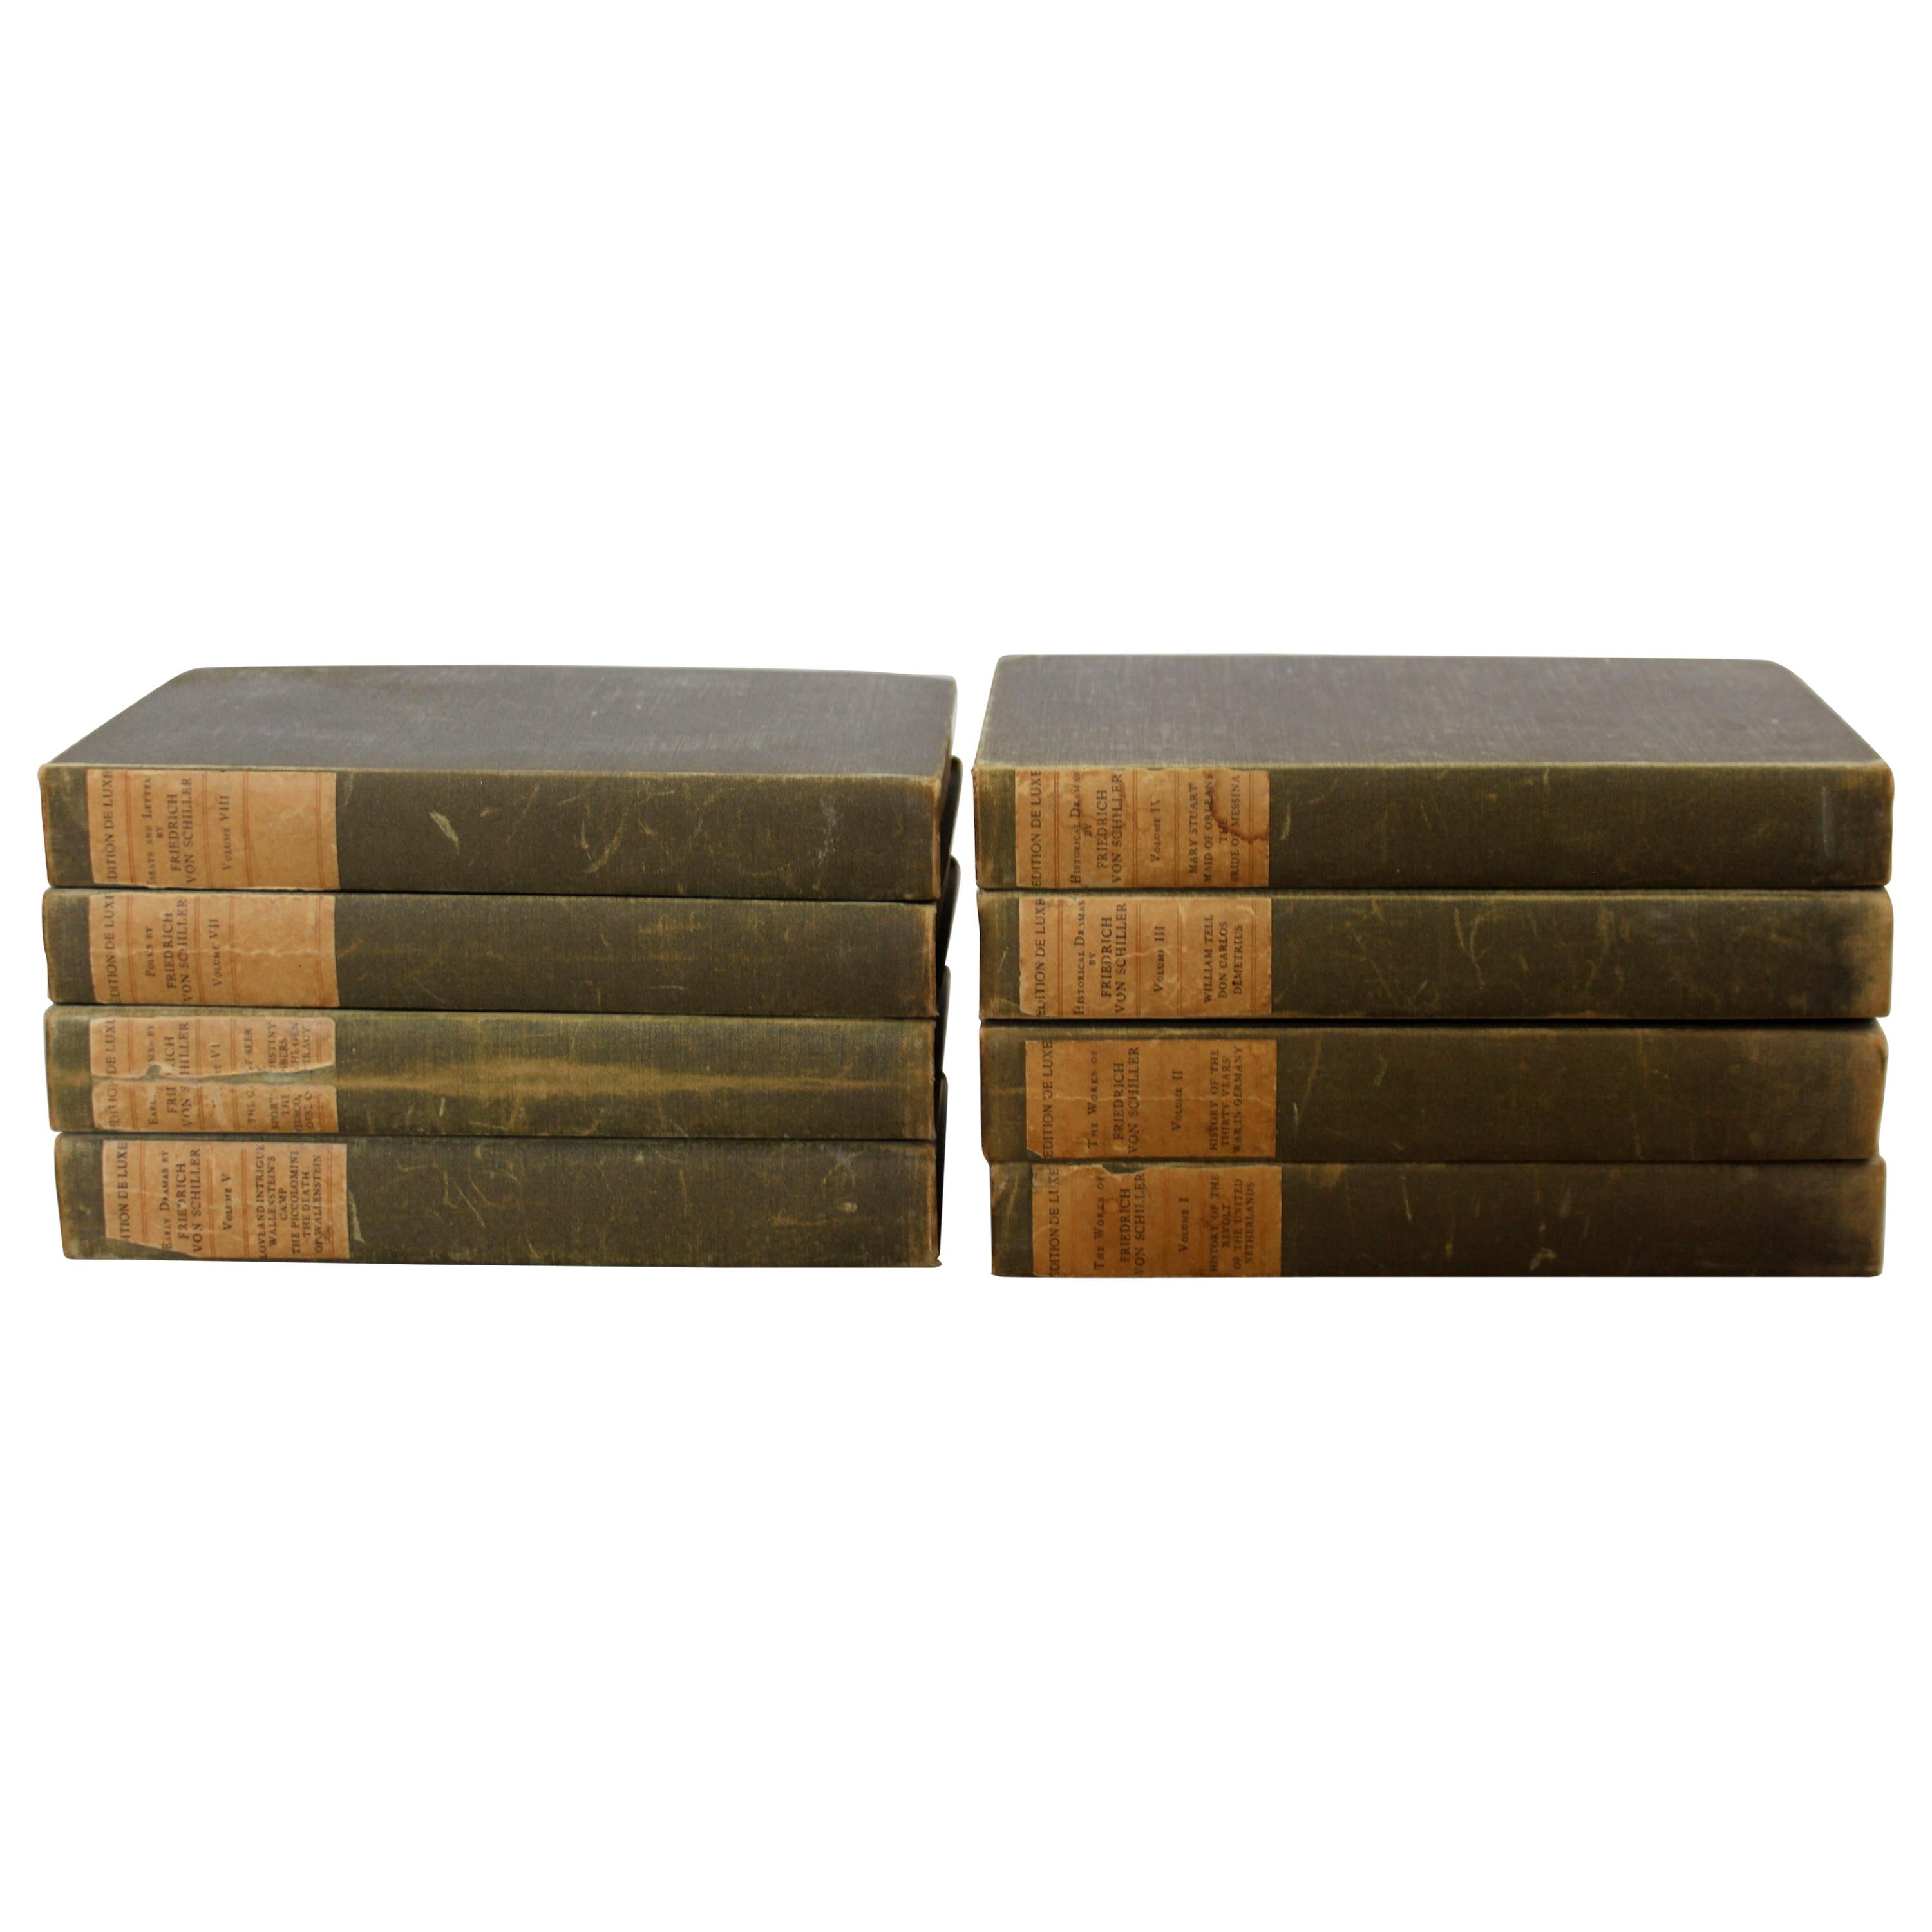 The Works of Friedrich Von Schiller Set of 8 Books 163/500 Limited Edition